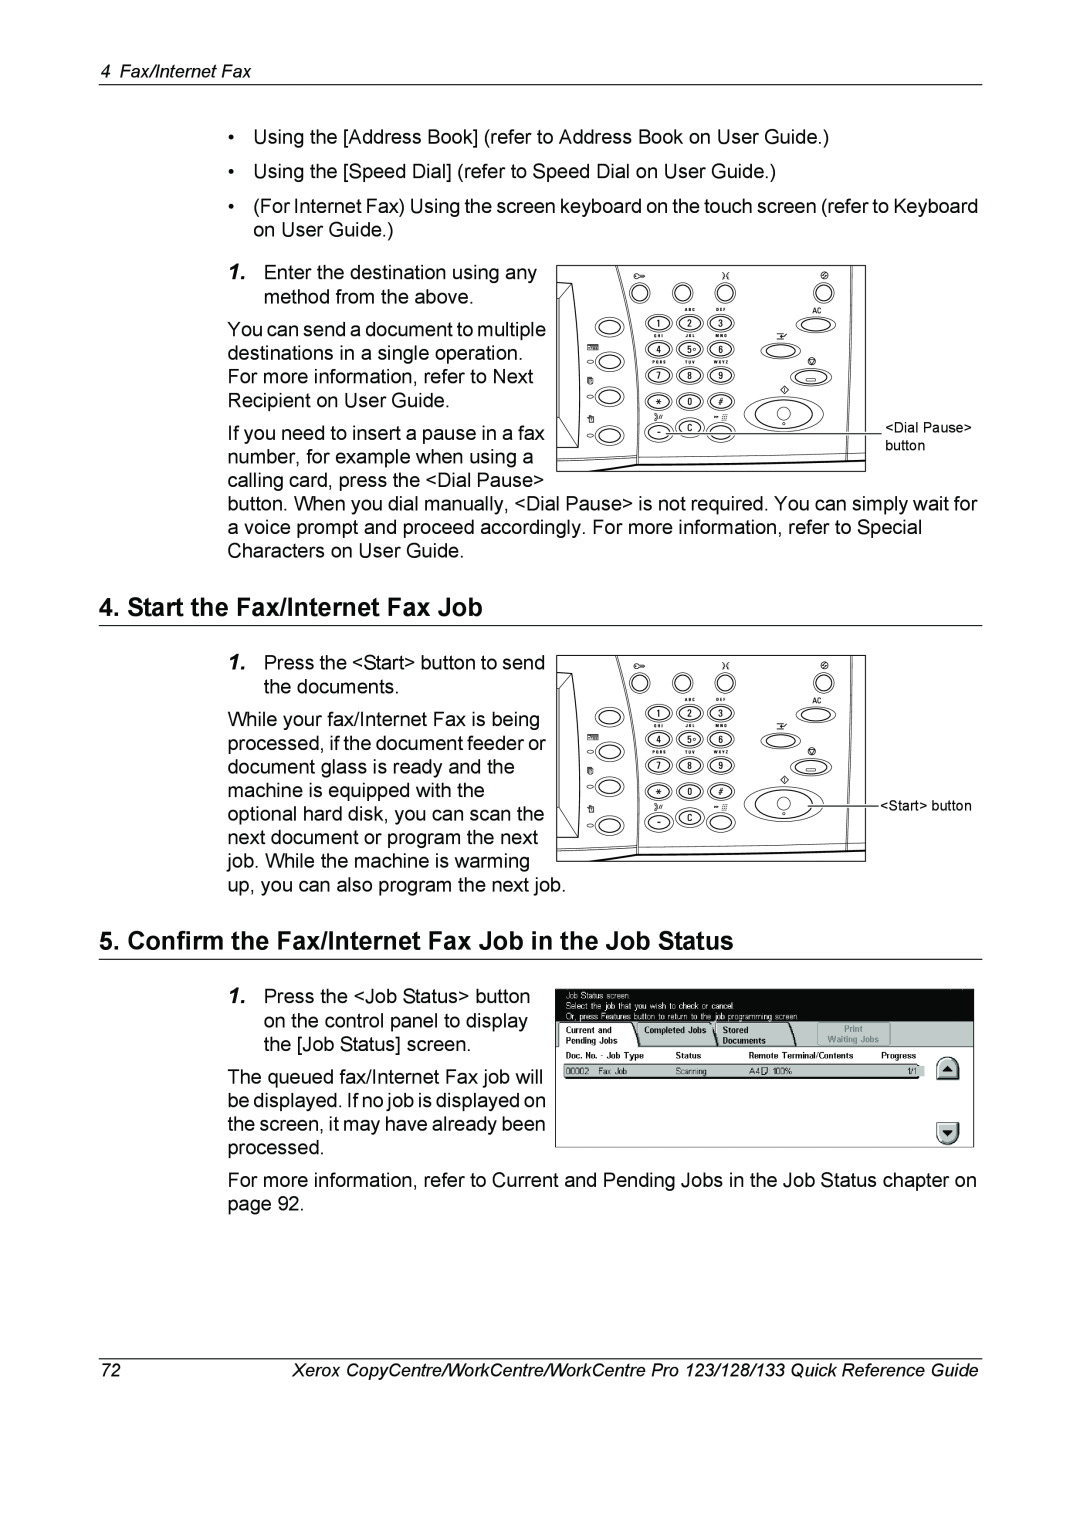 Xerox 604P18037 manual Start the Fax/Internet Fax Job, Confirm the Fax/Internet Fax Job in the Job Status 